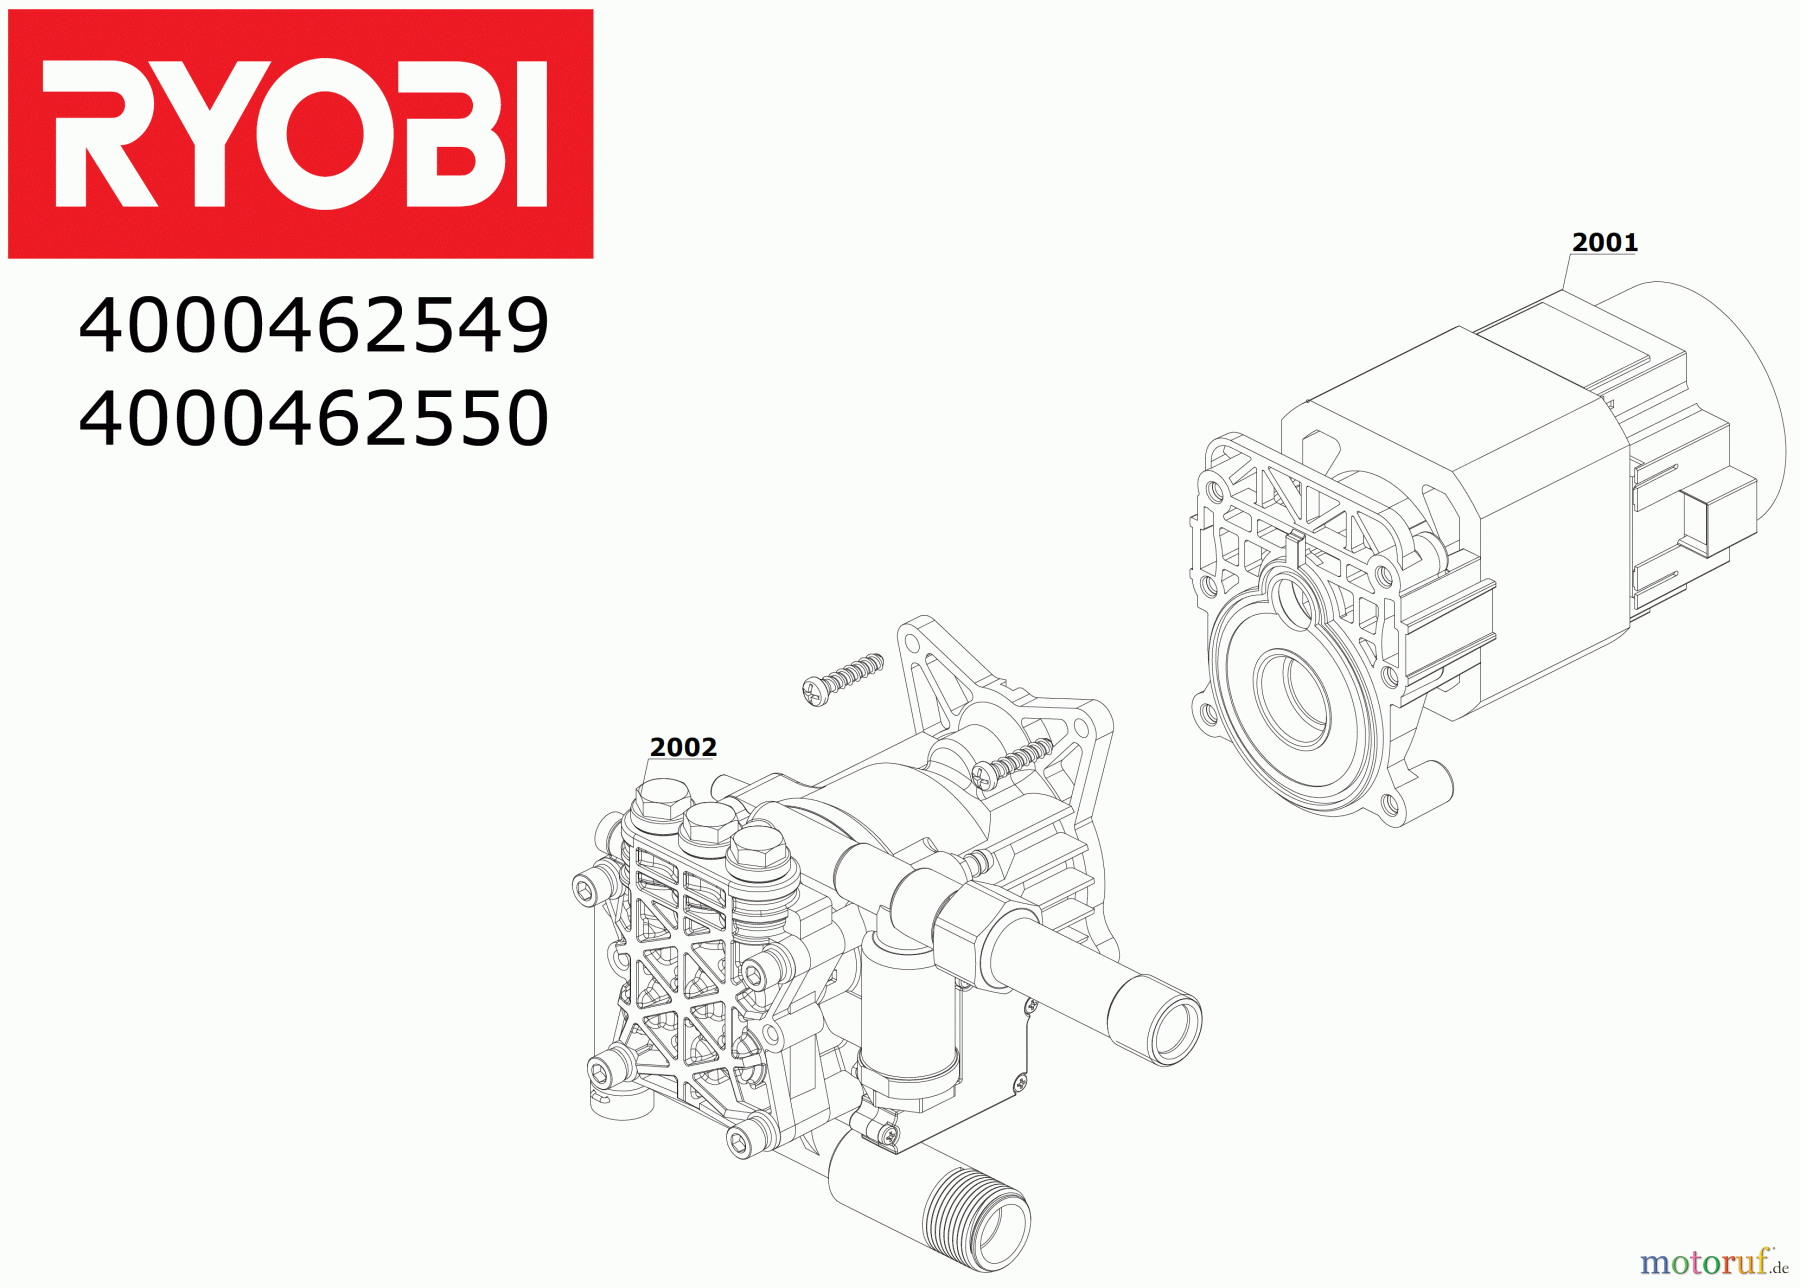  Ryobi Hochdruckreiniger RPW150XRB 2.200 W Elektro-Hochdruckreiniger, max. Druck 150 bar Seite 1 Motor